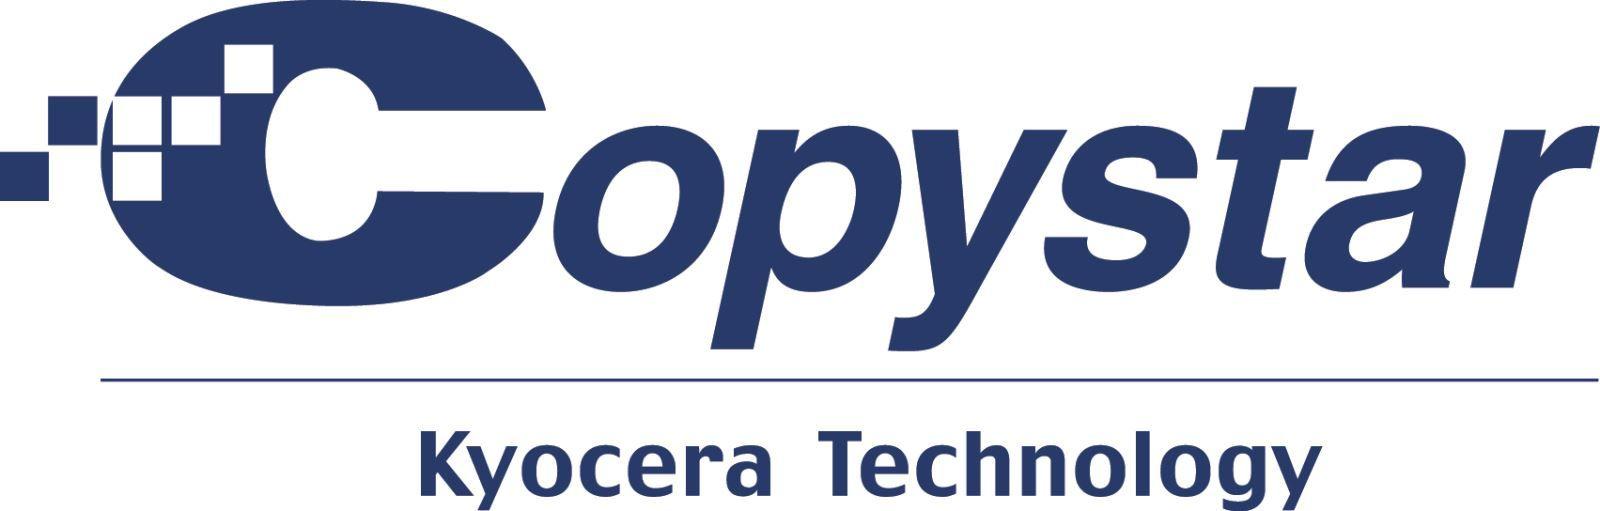 Copystar Logo - Find Your Next Top Performer, Copystar! - GreatAmerica Financial ...